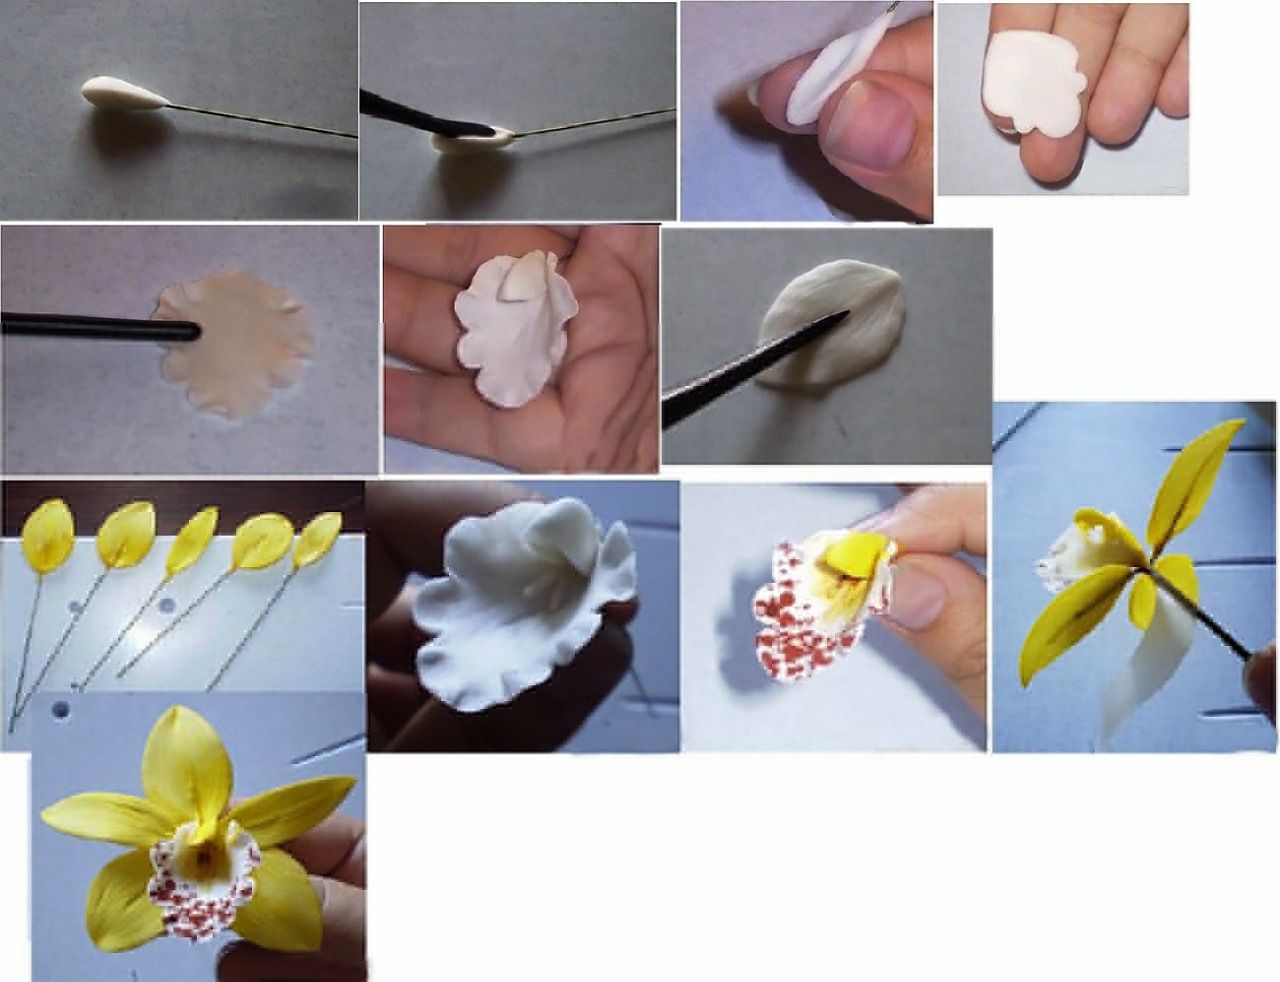 Цветы из полимерной глины (120 фото): инструкция, шаблоны, схемы изготовления, мастер-класс, секреты мастериц